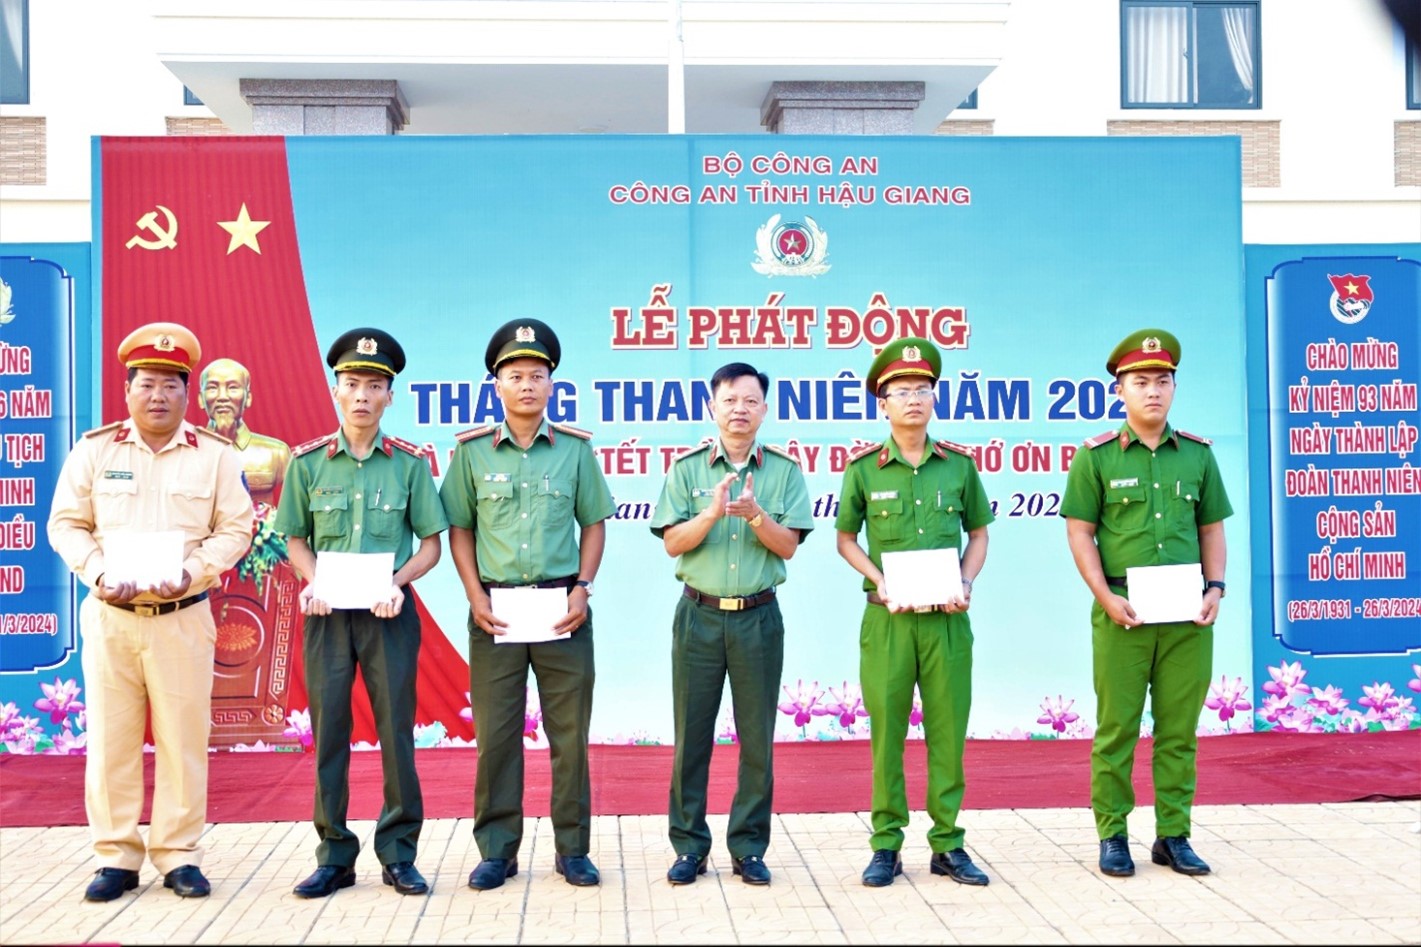 Đồng chí Đại tá Huỳnh Việt Hòa, Bí thư Đảng ủy, Giám đốc Công an tỉnh trao quà cho cán bộ, chiến sỹ có hoàn cảnh khó khăn tại lễ phát động